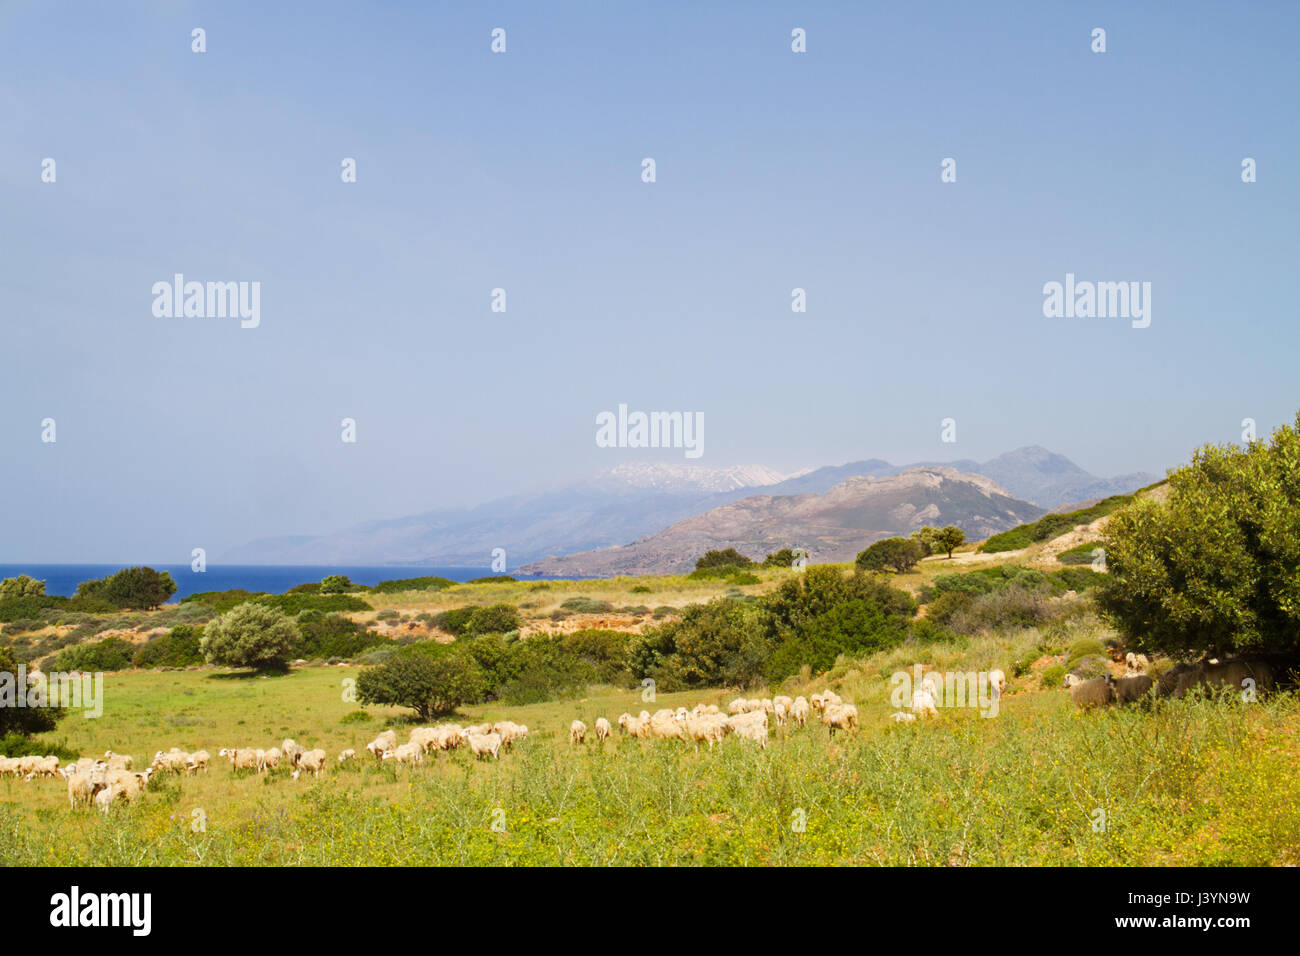 Un gregge di pecore al pascolo su un pascolo vicino al mare sull'isola di Creta, Grecia Foto Stock